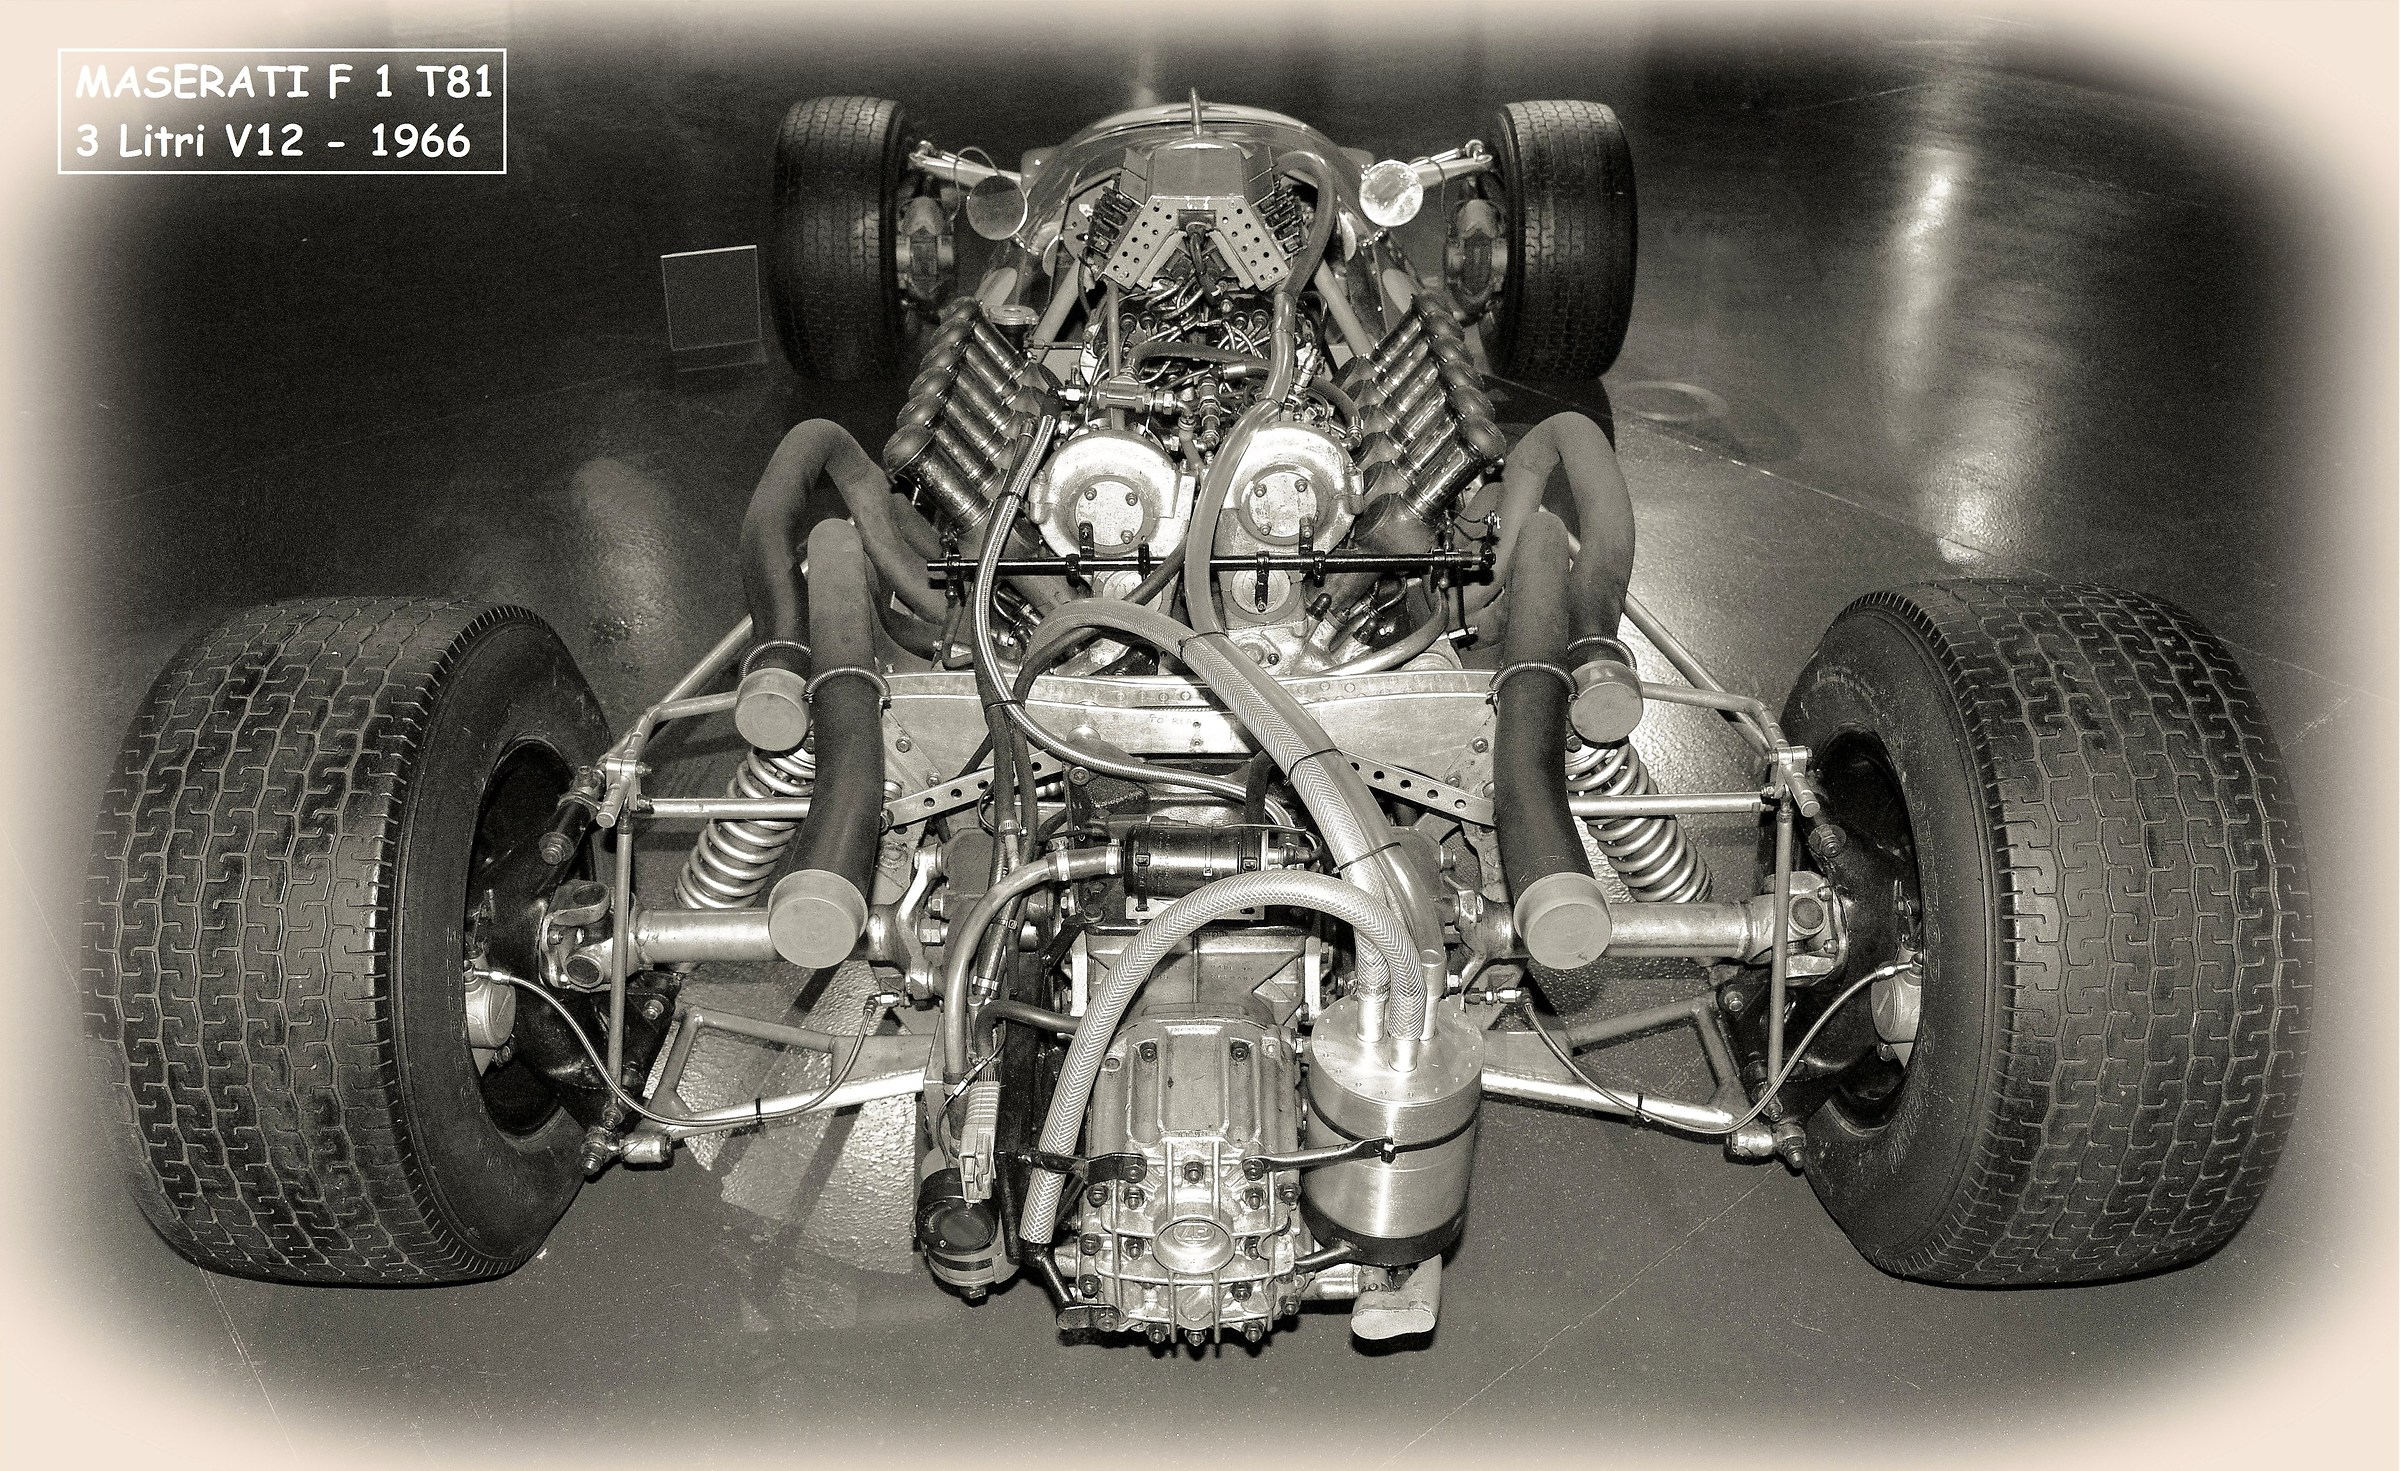 Cooper - Maserati F.1 T81 3 liter V12 - 1966...